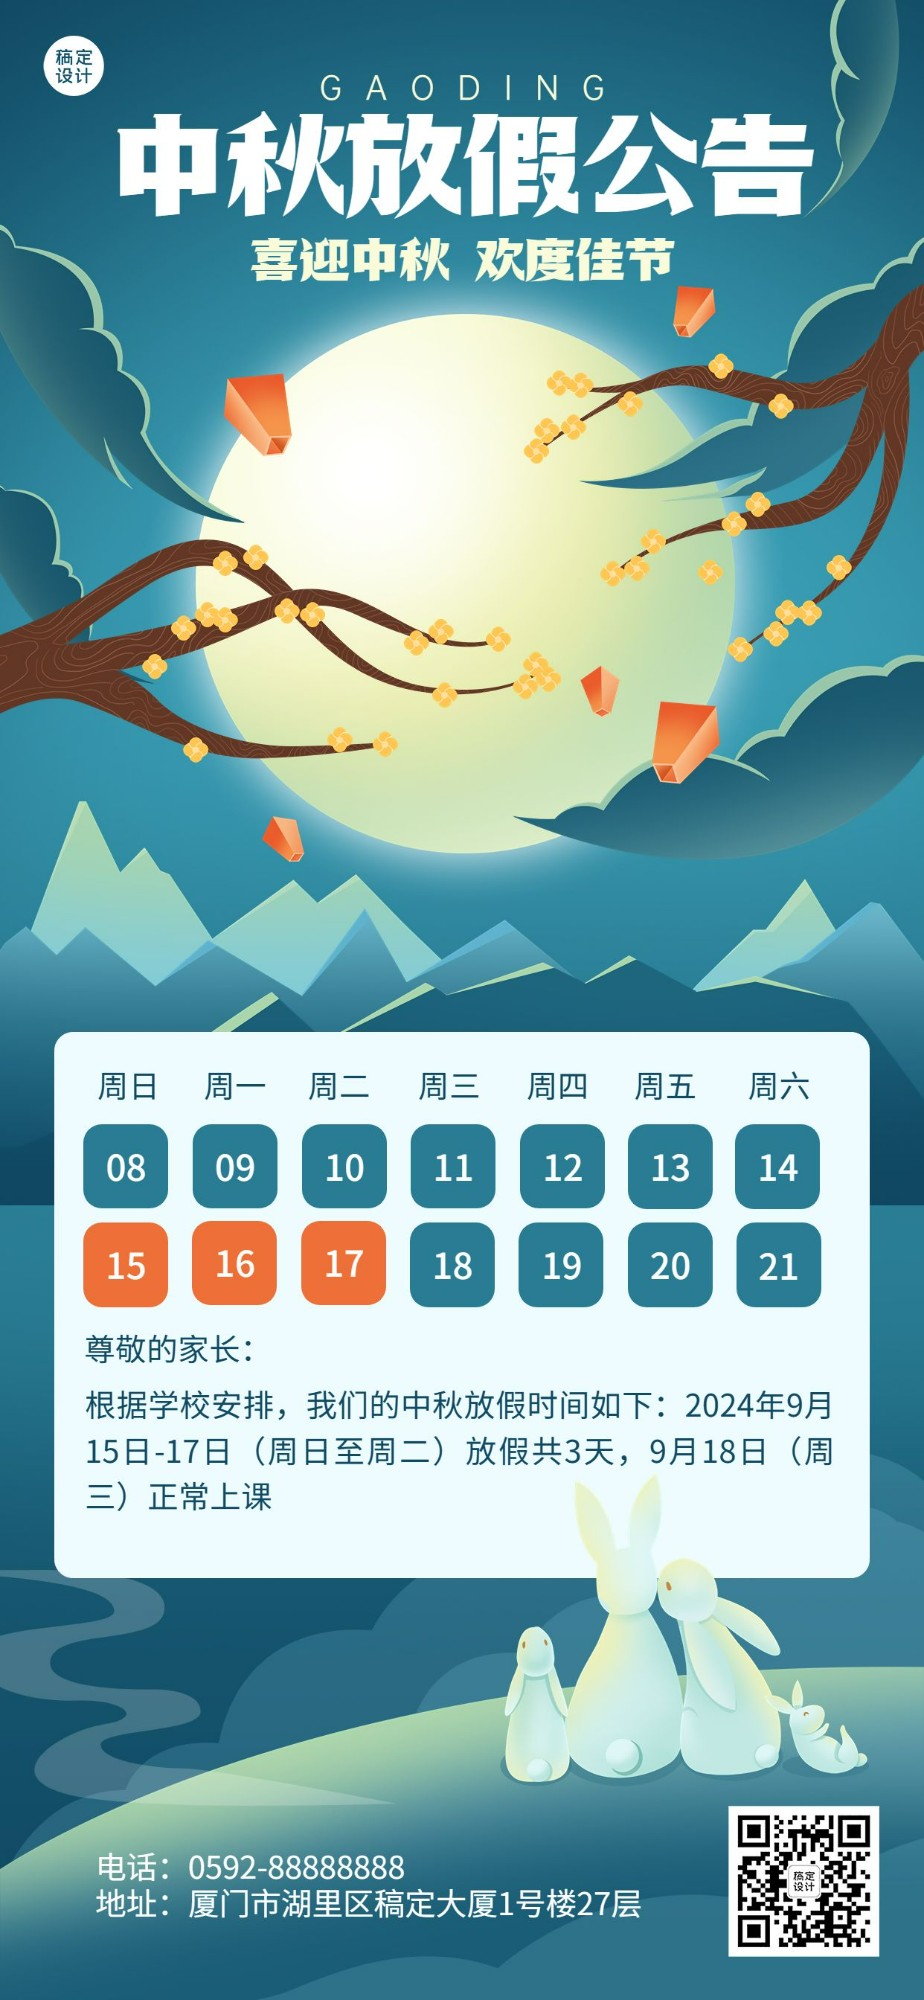 中秋节放假通知中国风全屏竖版海报预览效果